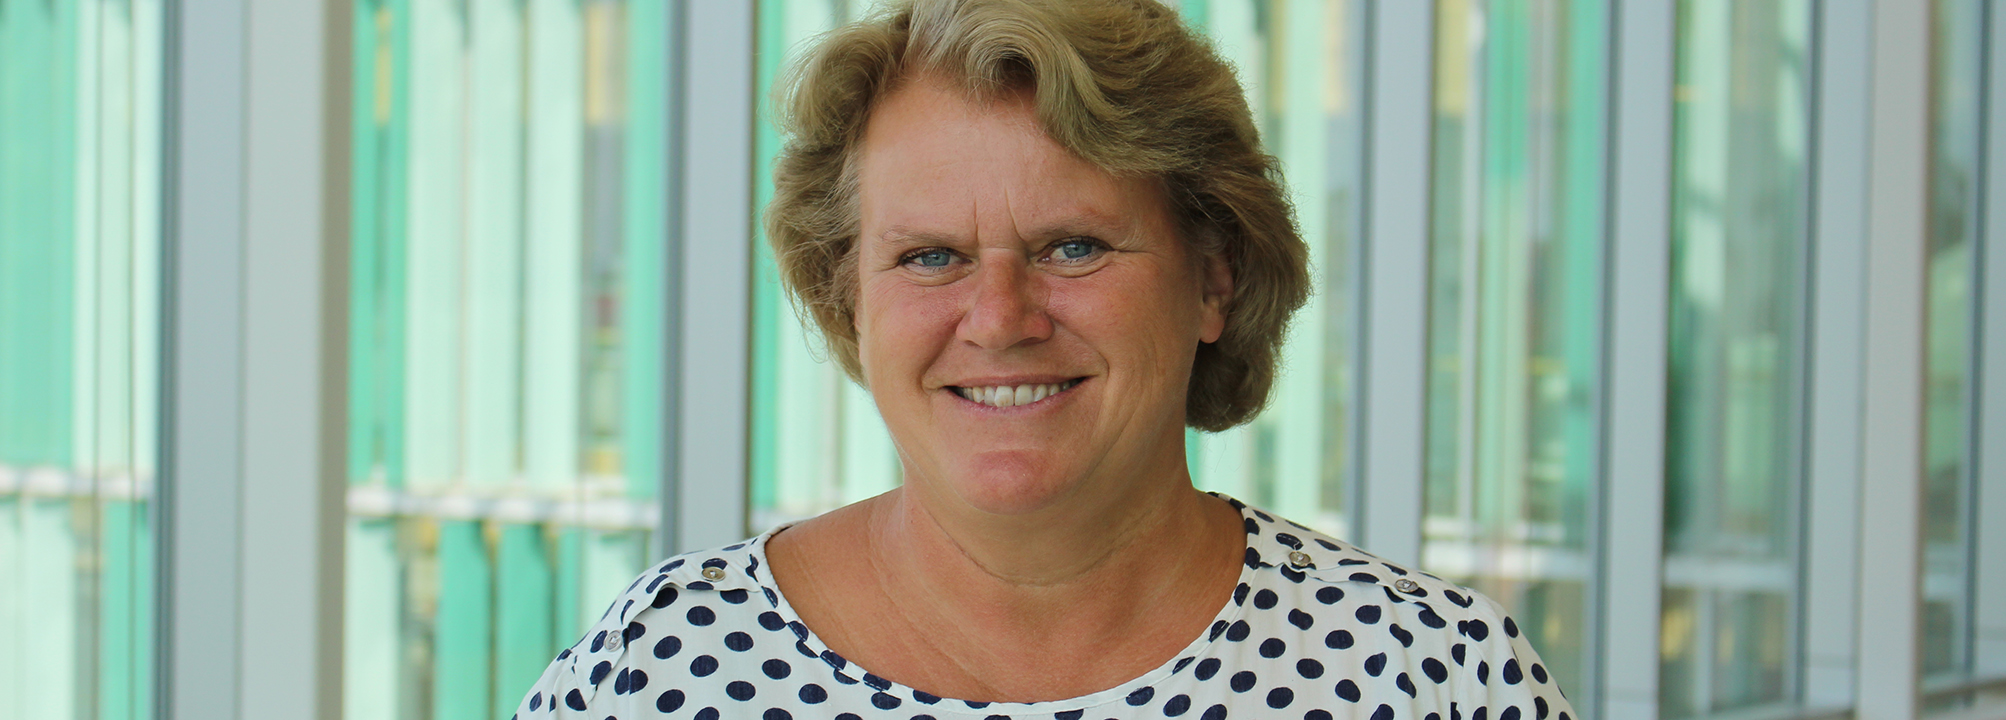 Lilian Müller, tillgänglighetsrådgivare i Lunds kommun och industridoktorand vid Certec på Lunds Teknisk Högskola.